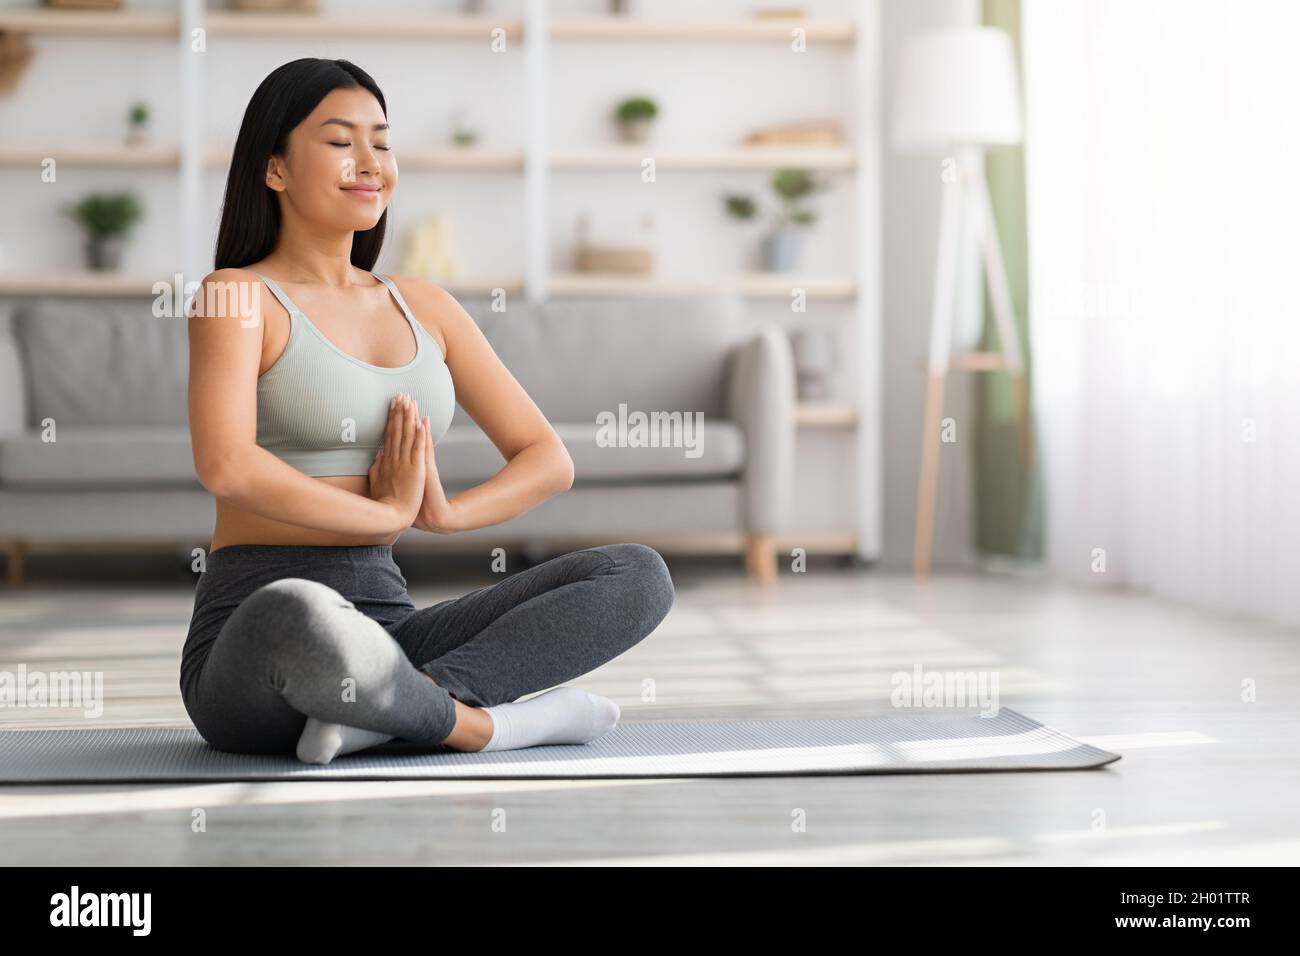 Yoga du matin.Portrait d'une jeune femme asiatique calme méditant à la maison, femme coréenne détendue assise en position lotus avec les yeux fermés et la main clasdée Banque D'Images